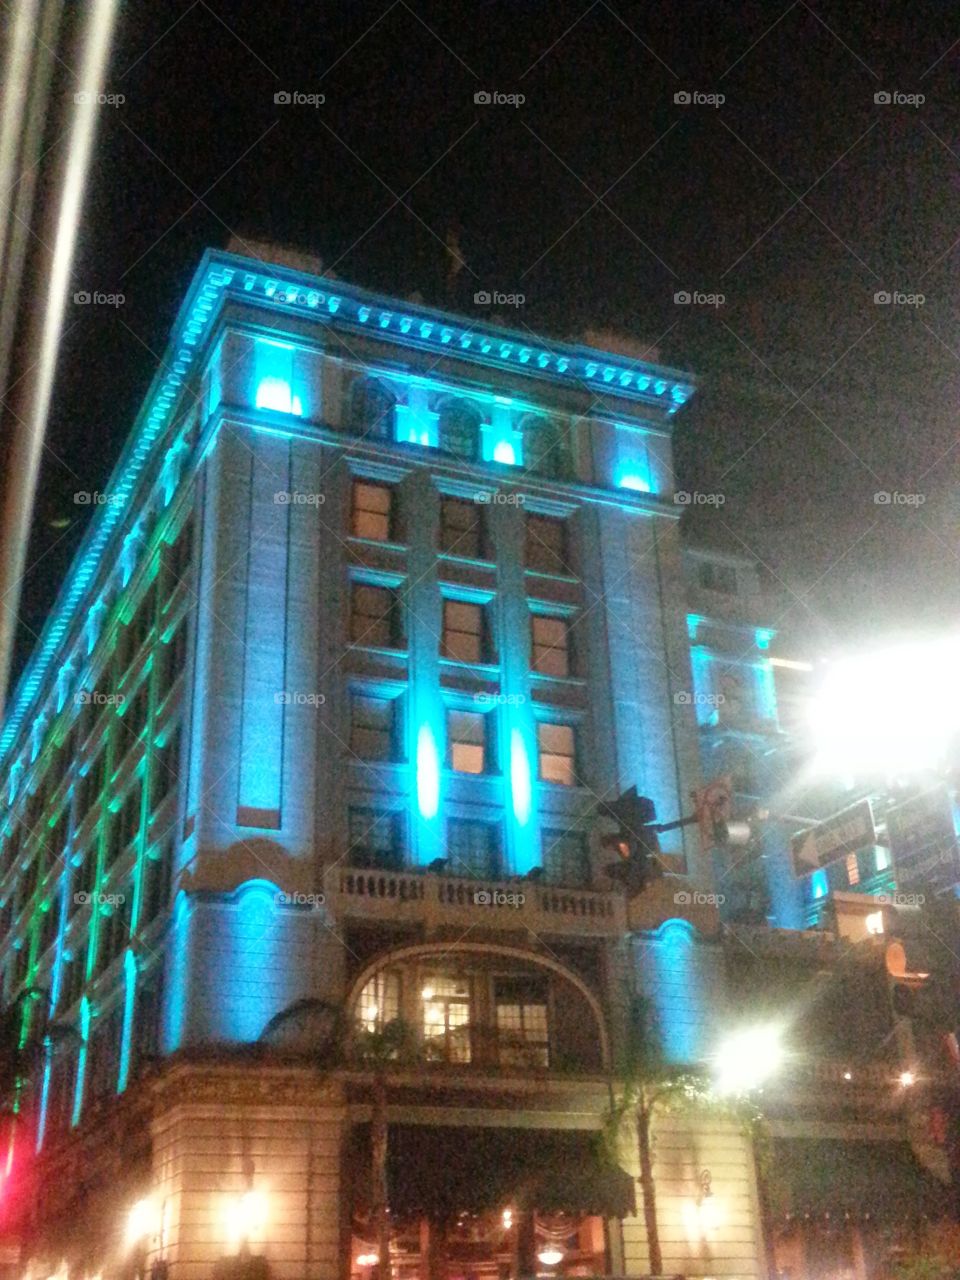 The Grant Hotel